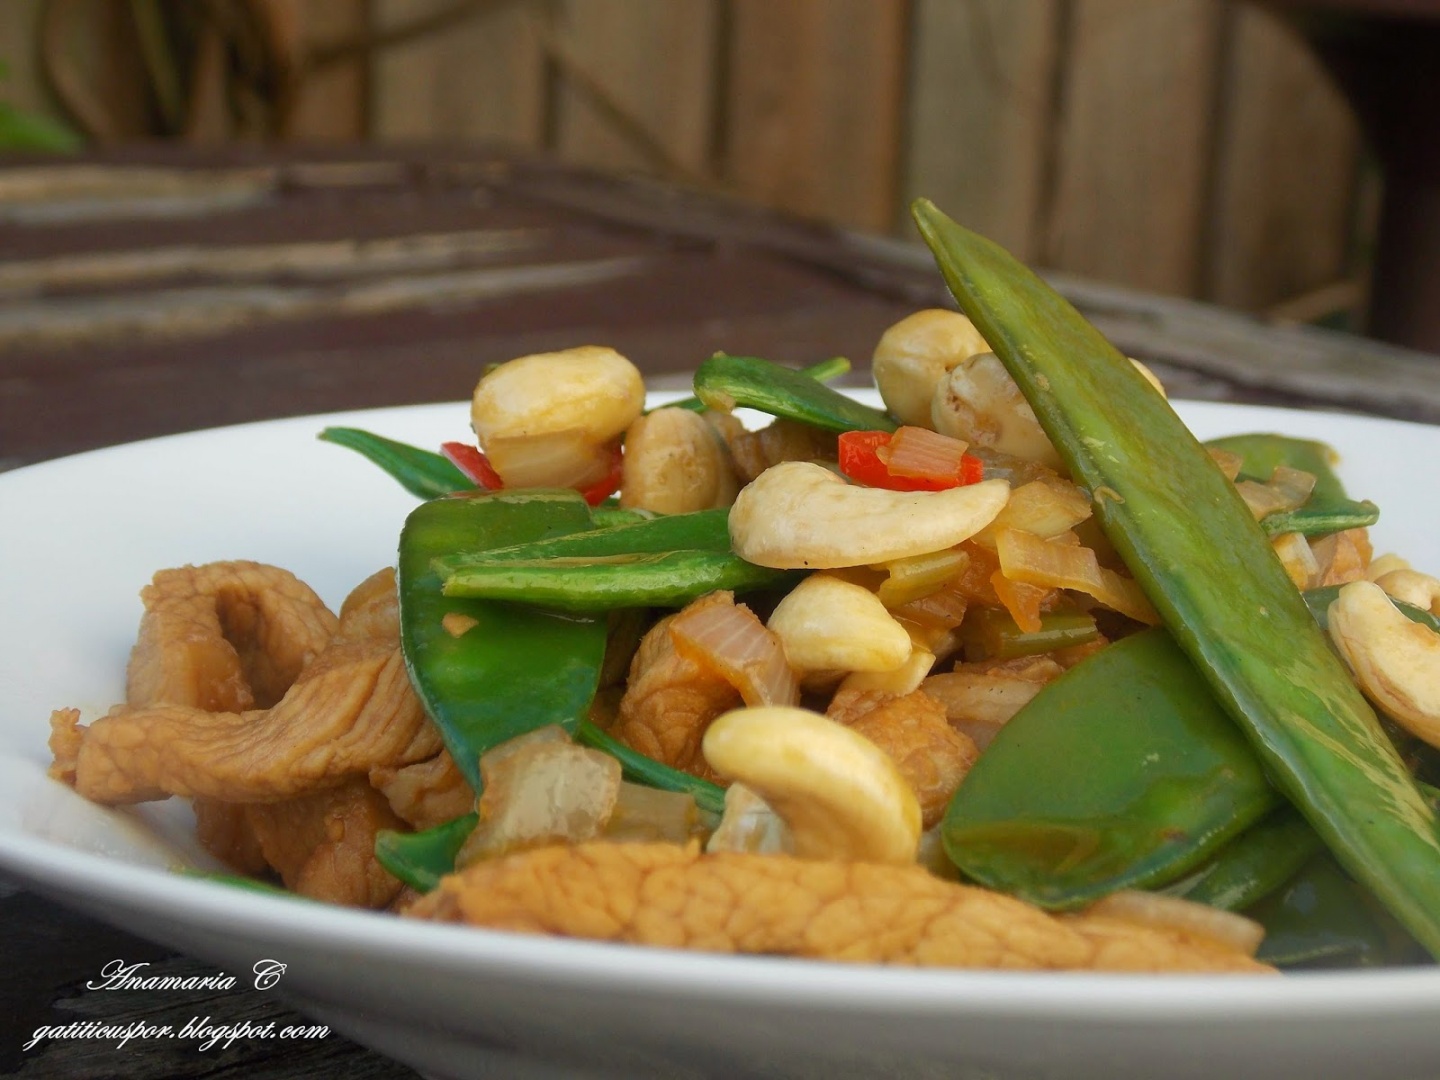 Porc Tailandez Cu Mangetout si Caju